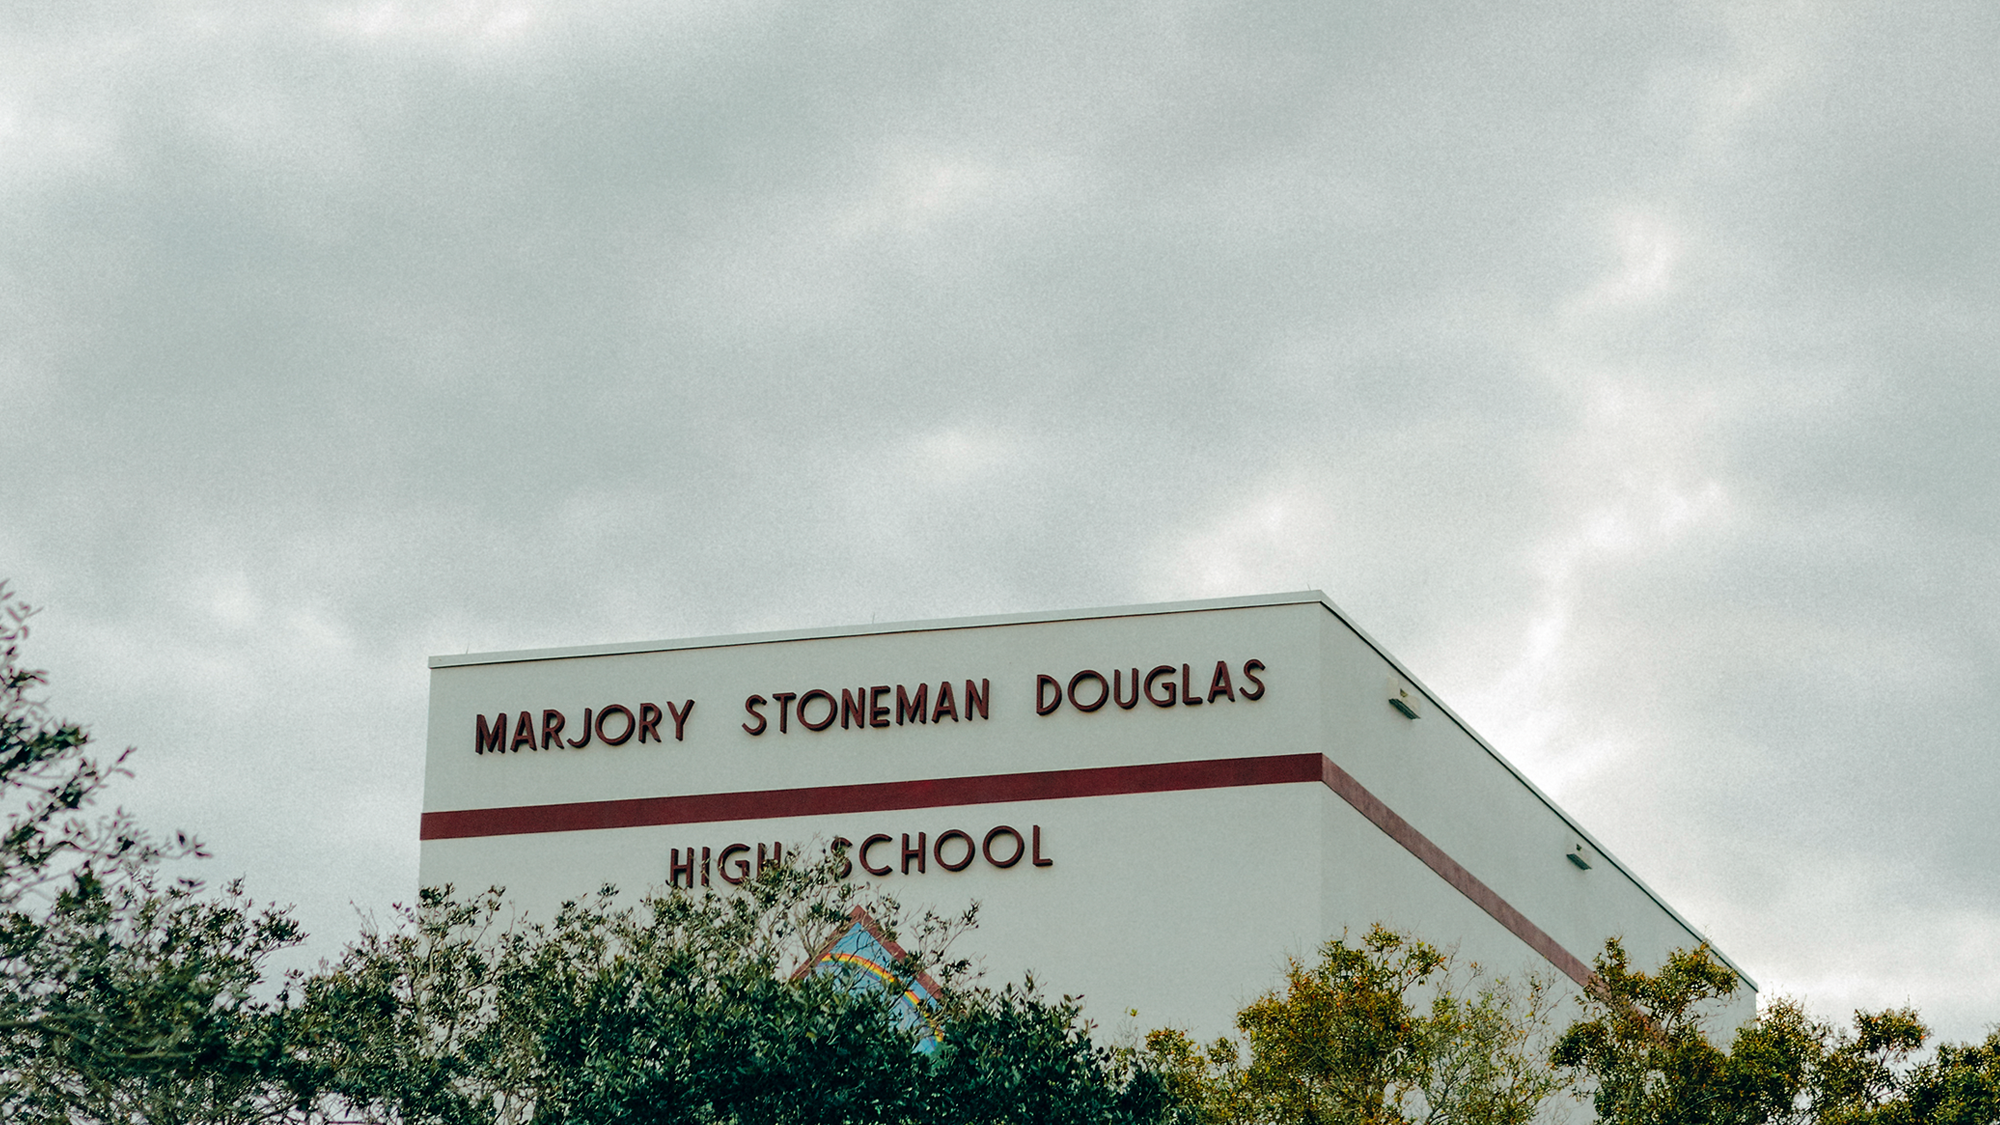 Foto vom Gebäude mit "Marjory Stoneman Douglas High School" darauf, hinter Bäumen vor wolkigem grauen Himmel